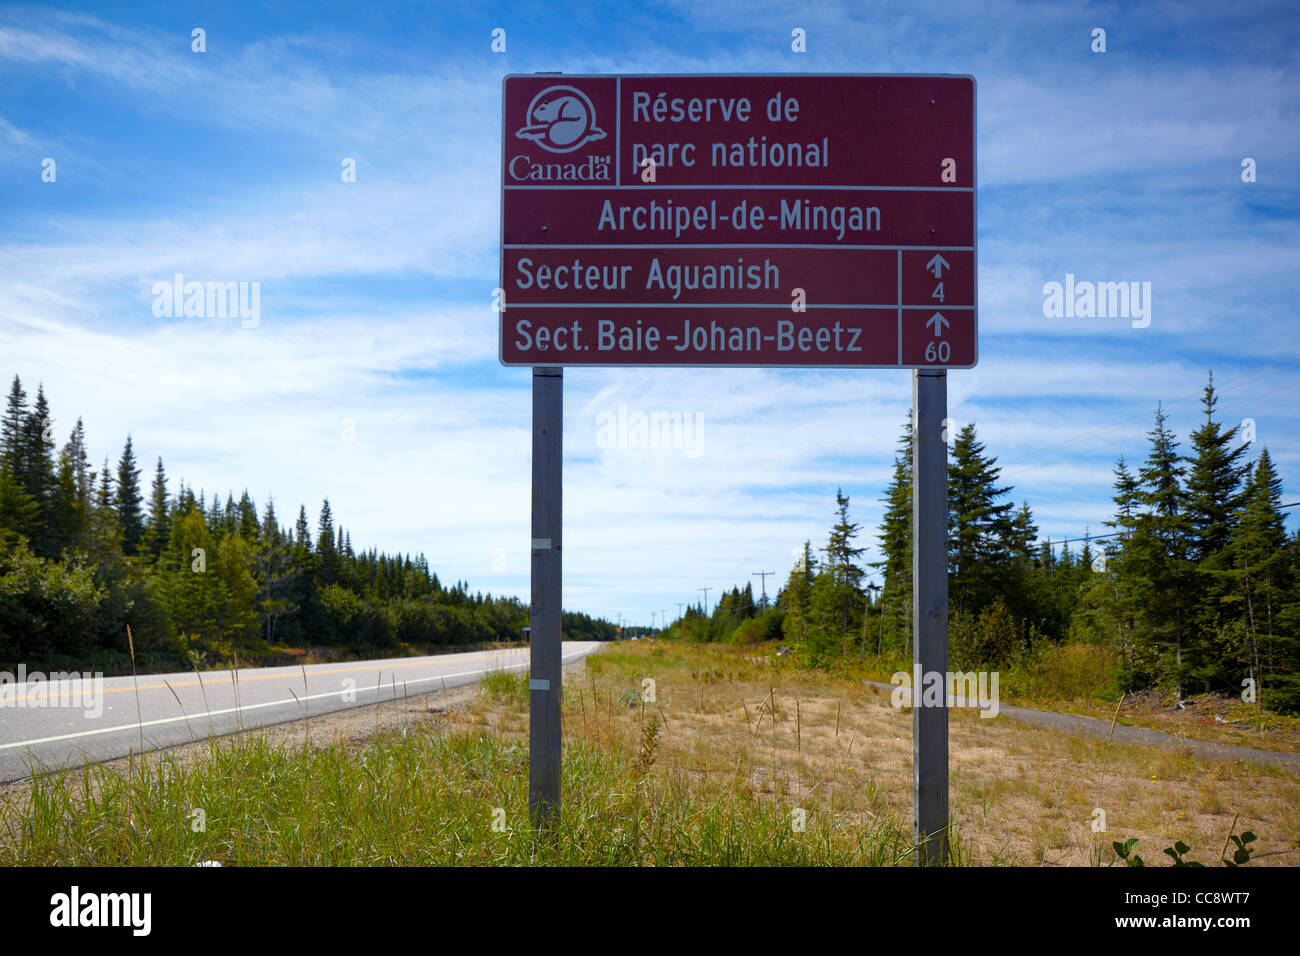 Archipel de Mingan, Reserve de Parc National, Quebec, Canada Stock Photo